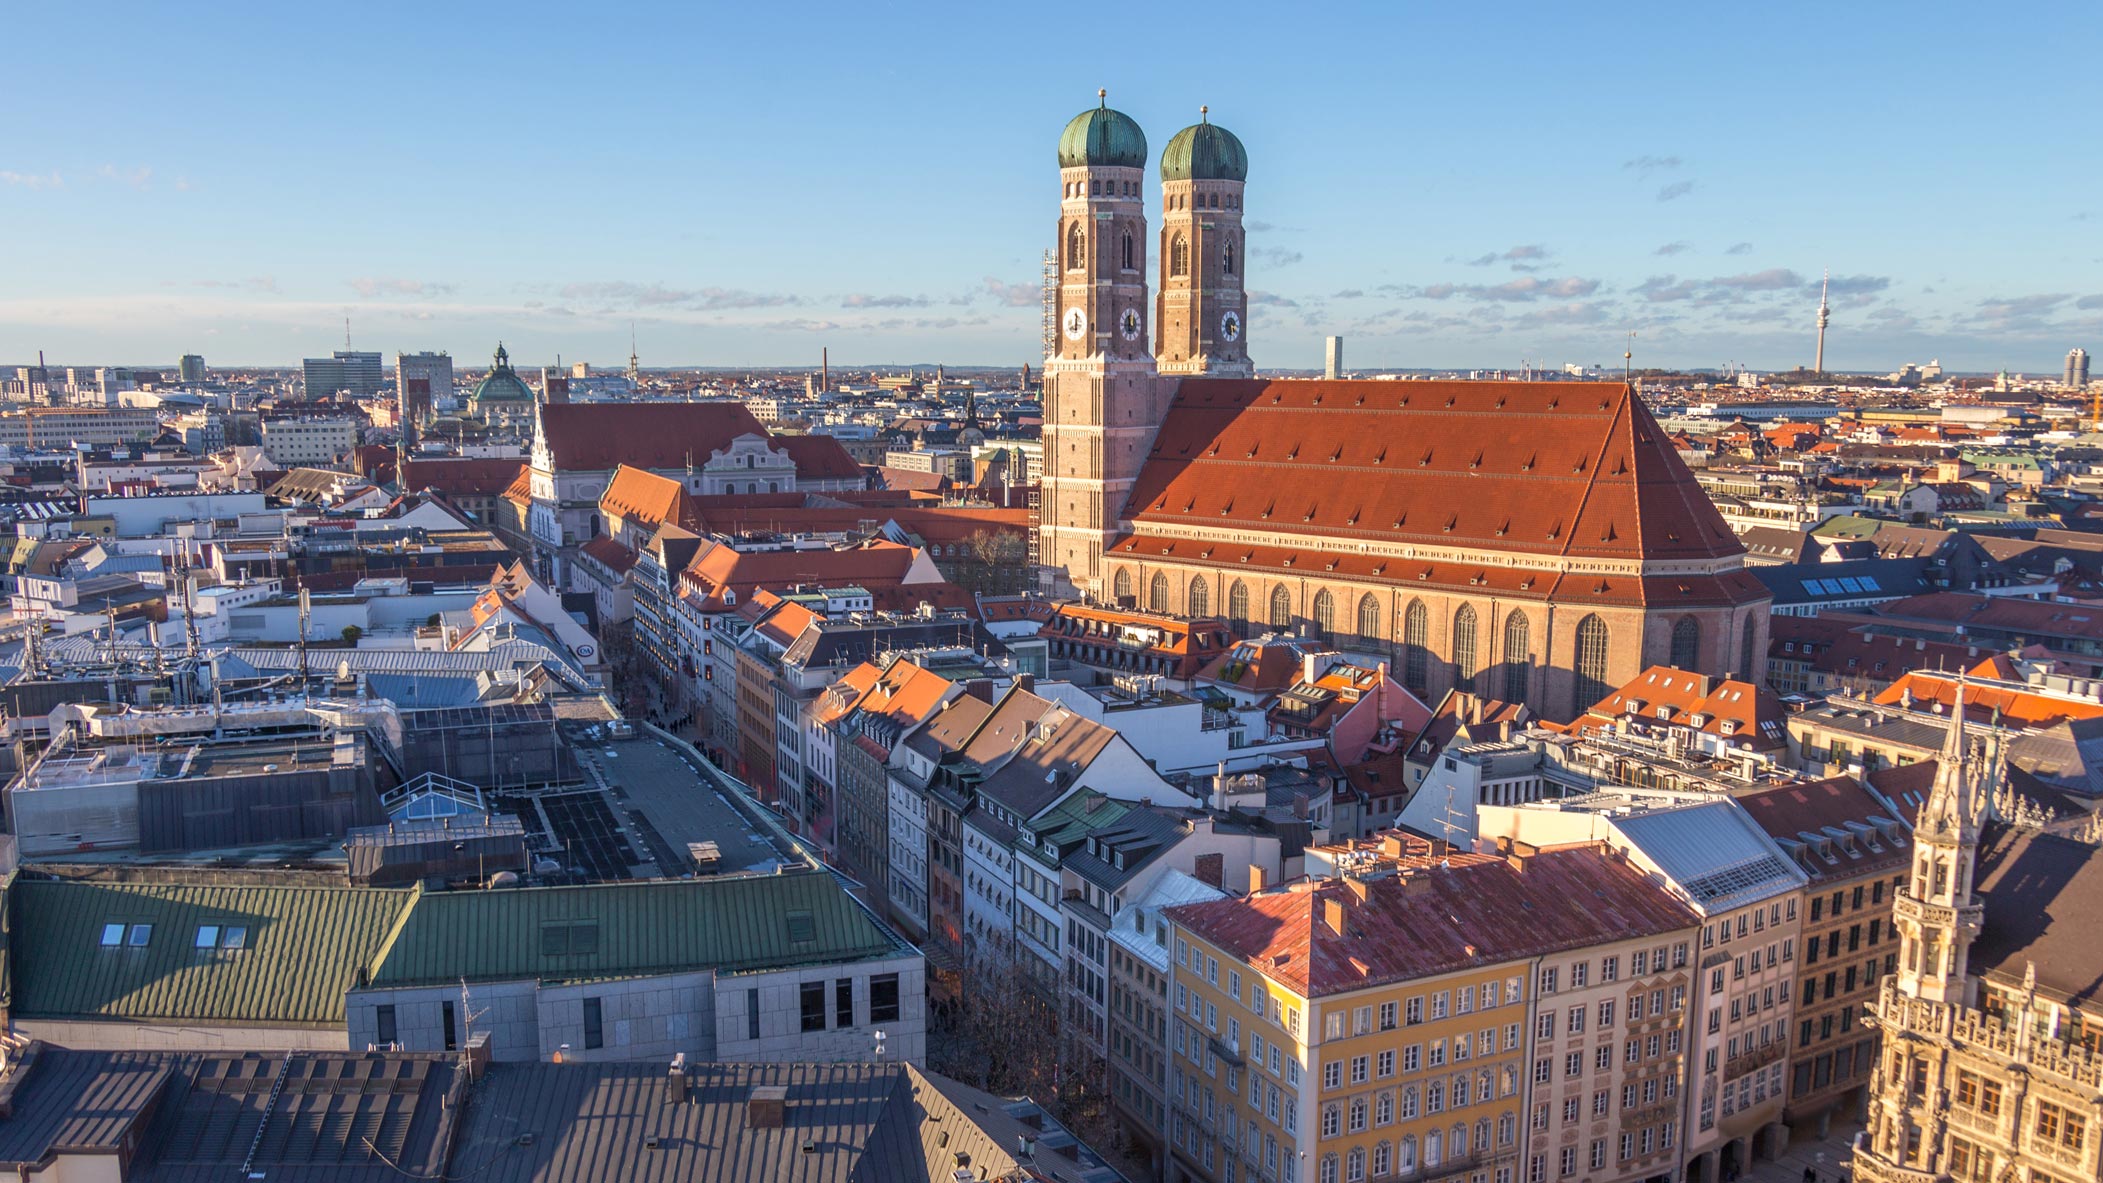 Immobilienpreise: So viel kostet ein Haus oder eine Wohnung in Bayern